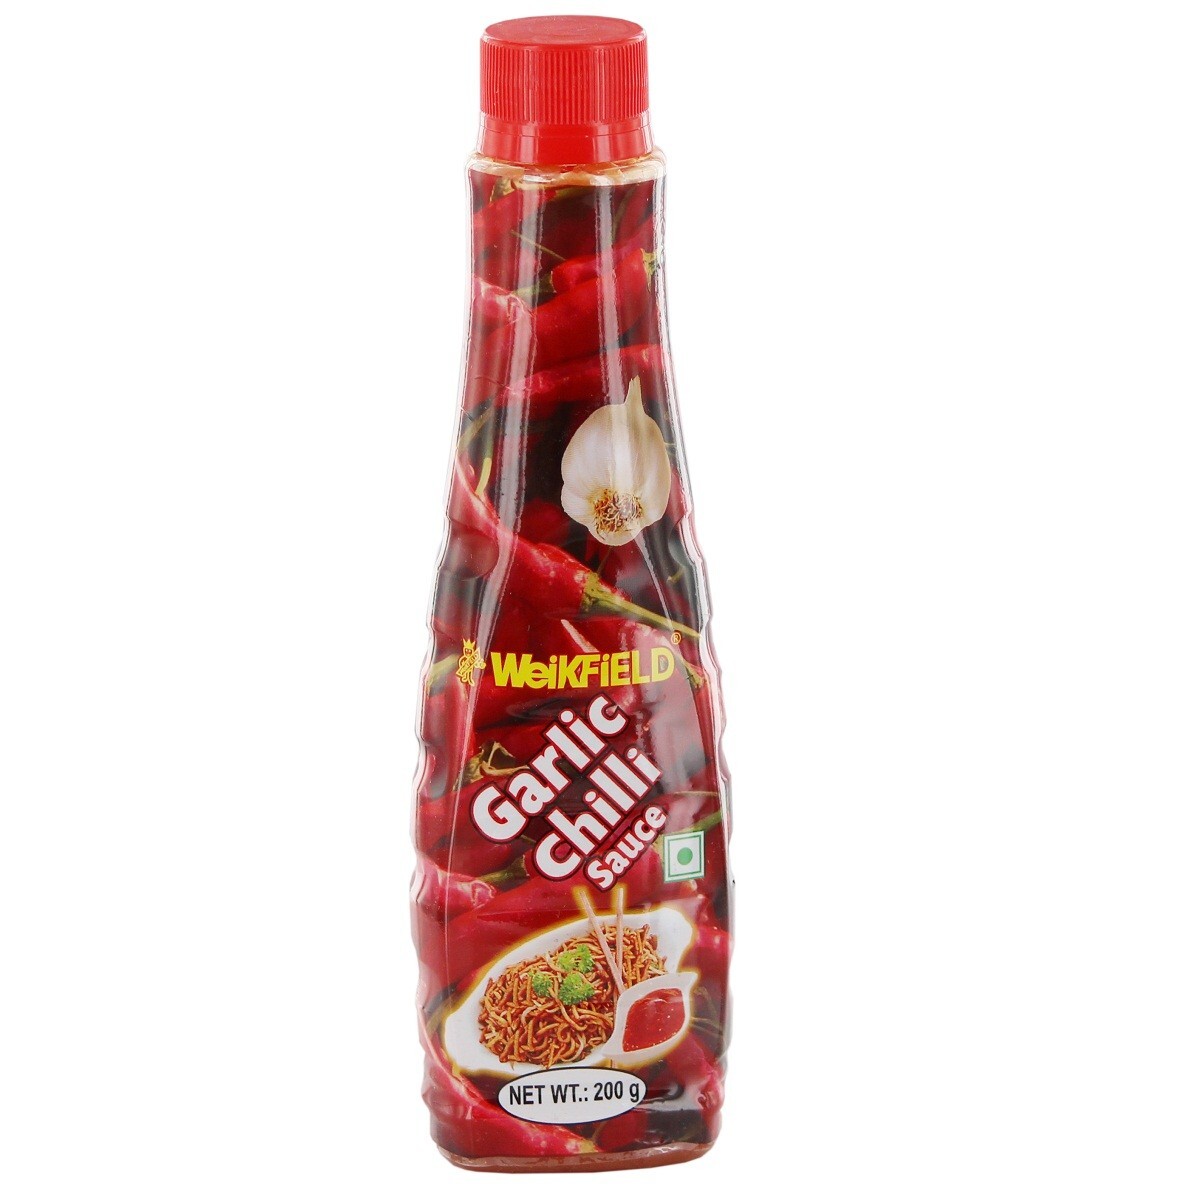 Weikfield Garlic Chilli Sauce 200g